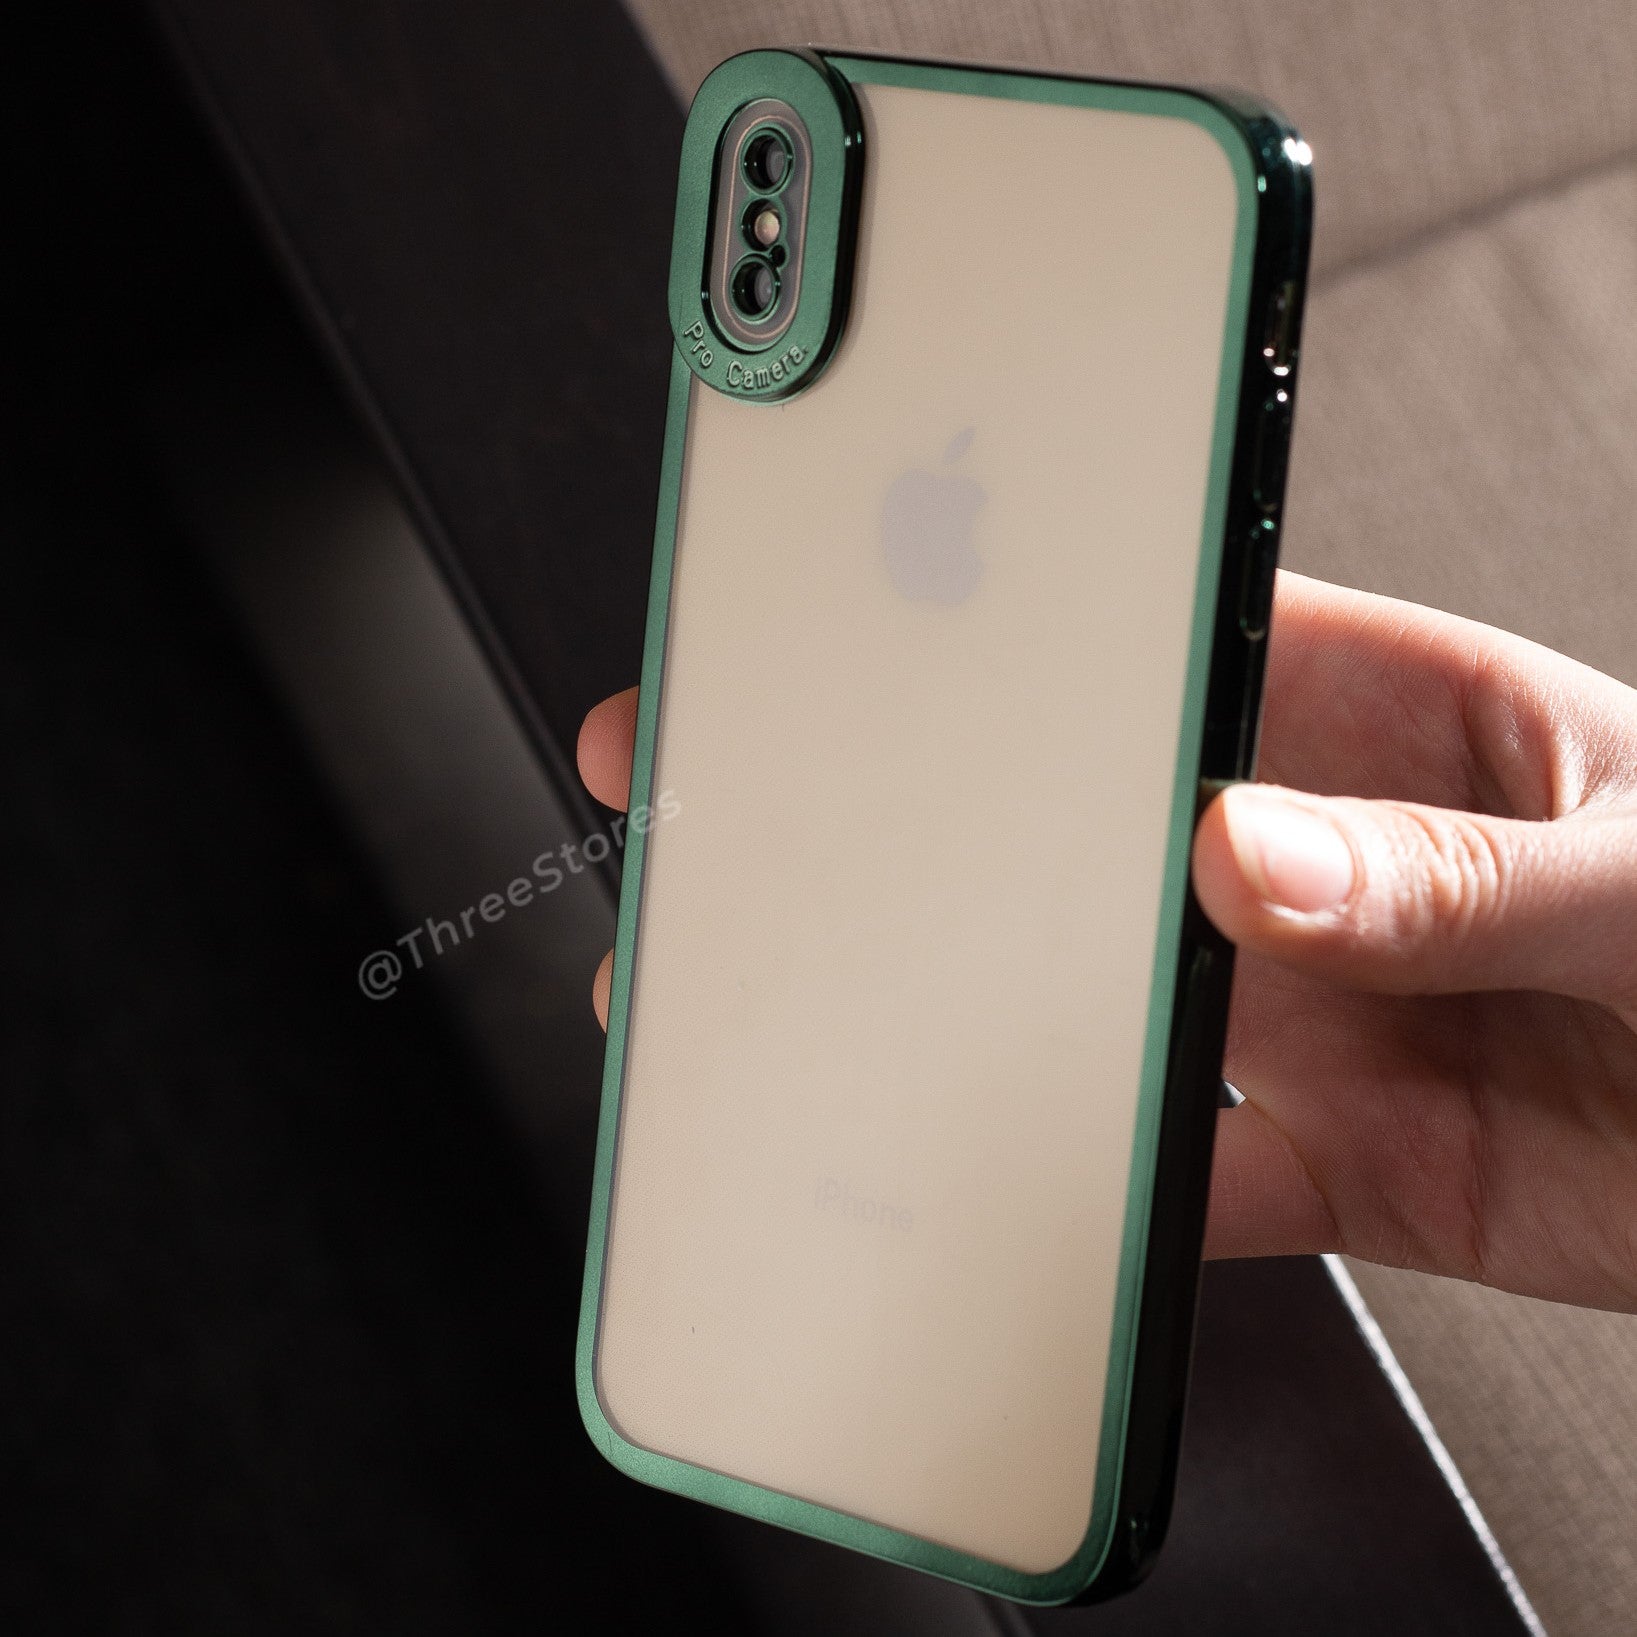 PhoneCase Slim Camera Protection Case iPhone 7 /8 Plus